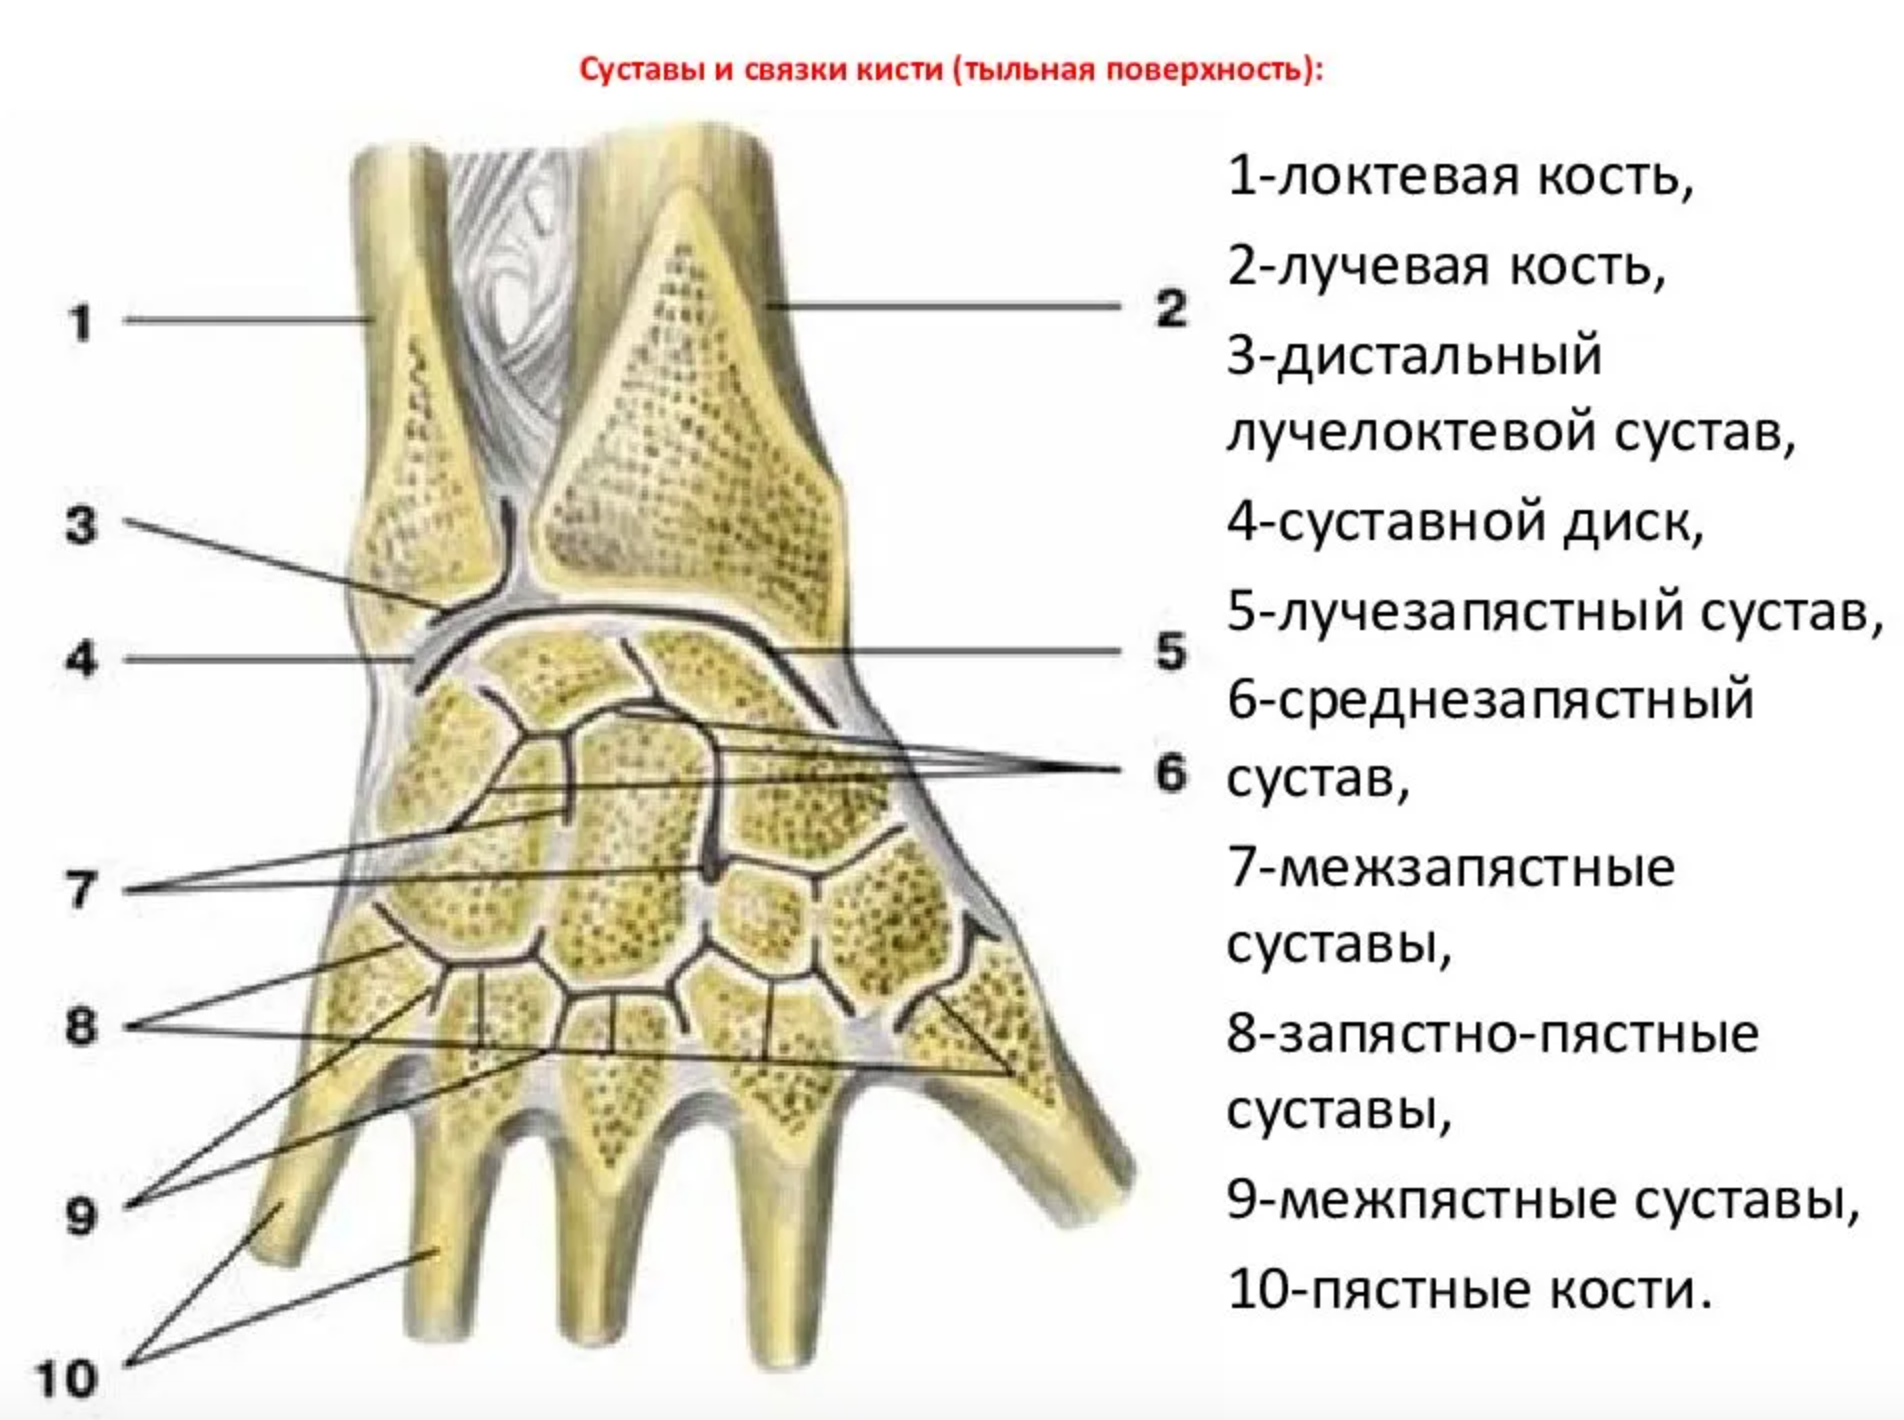 Суставной диск лучезапястного сустава. Дистальный лучелоктевой сустав анатомия связки. Среднезапястный сустав связки. Лучезапястный сустав анатомия суставные поверхности. Соединения костей запястья